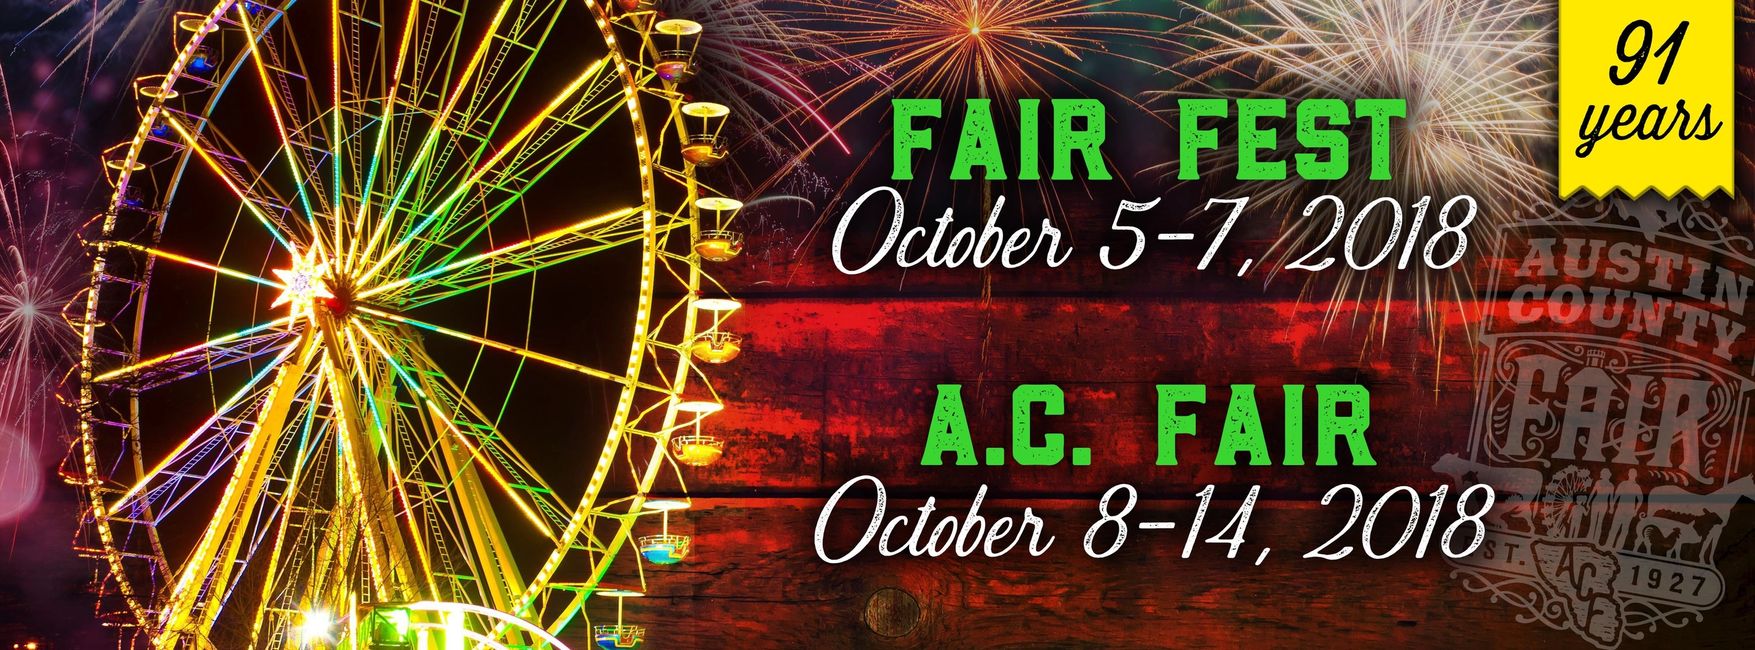 Austin County Fair Fair, Event Center